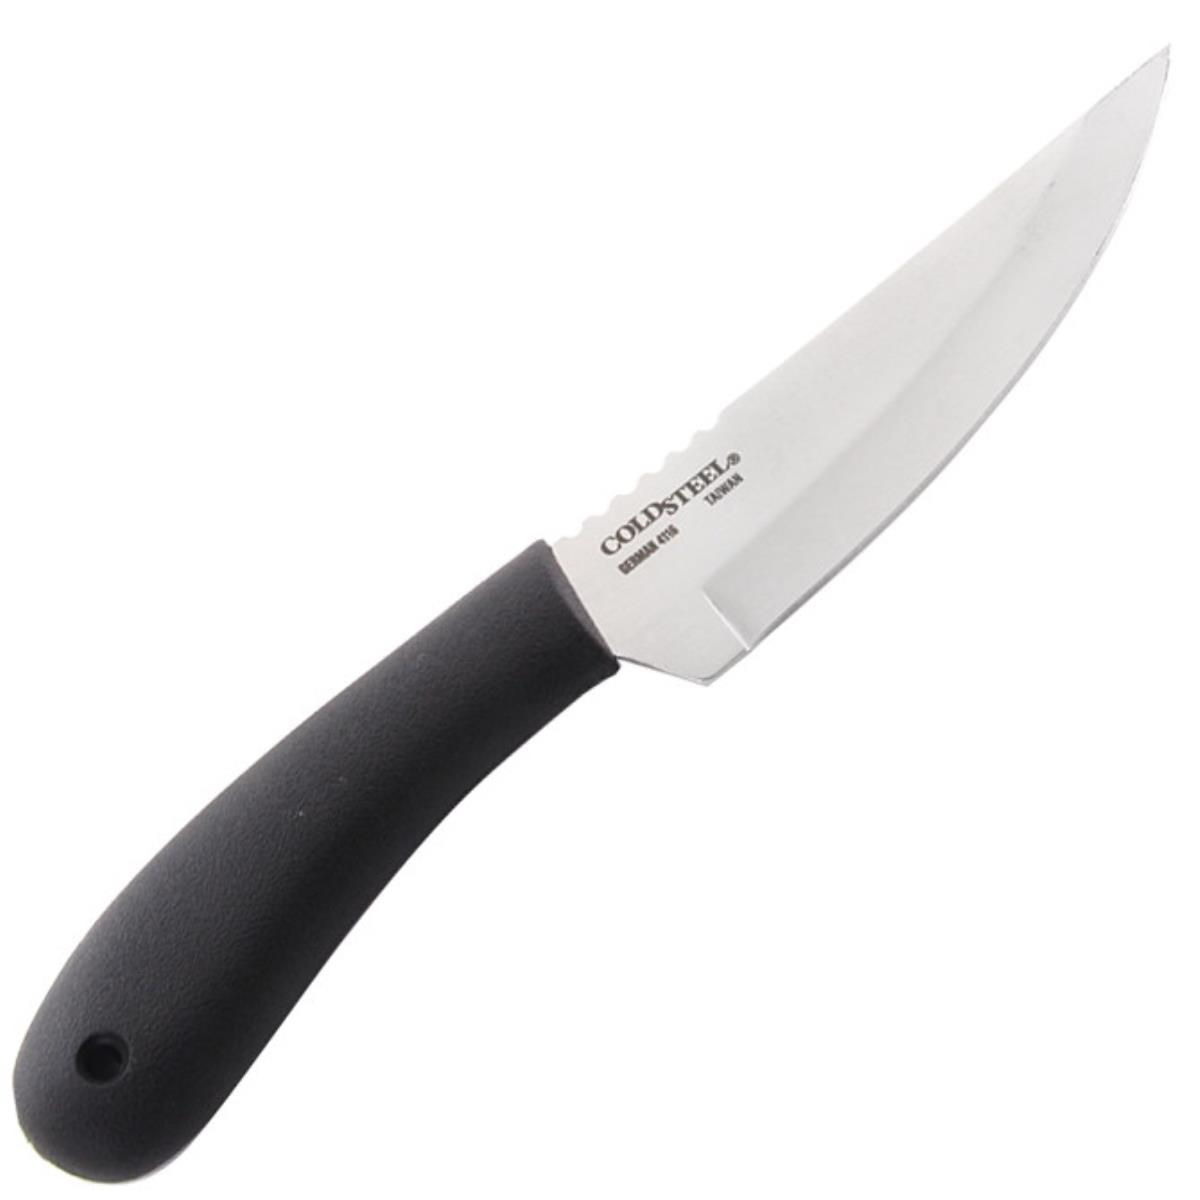 Нож сталь 4116 German, ножны пластик 20RBC Roach Belly Cold Steel складной нож crkt xolotl сталь 1 4116 ss рукоять g10